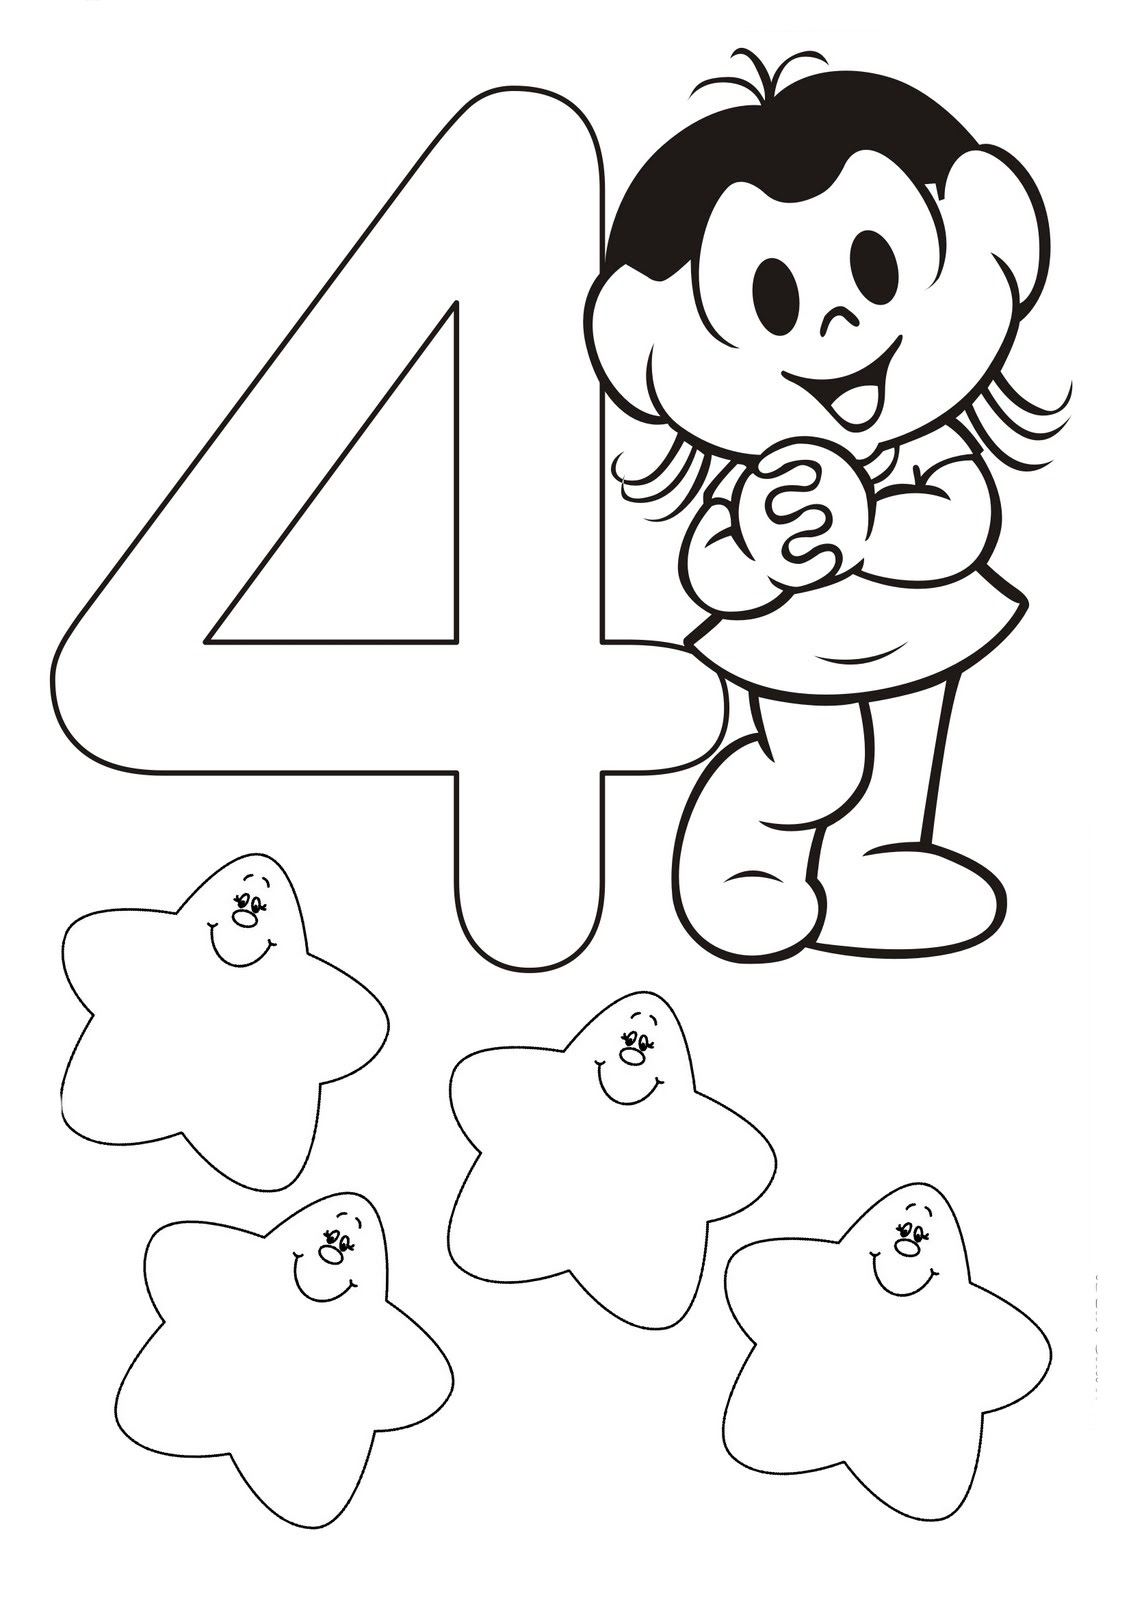 Desenho para colorir de Número 4 Turma da Monica